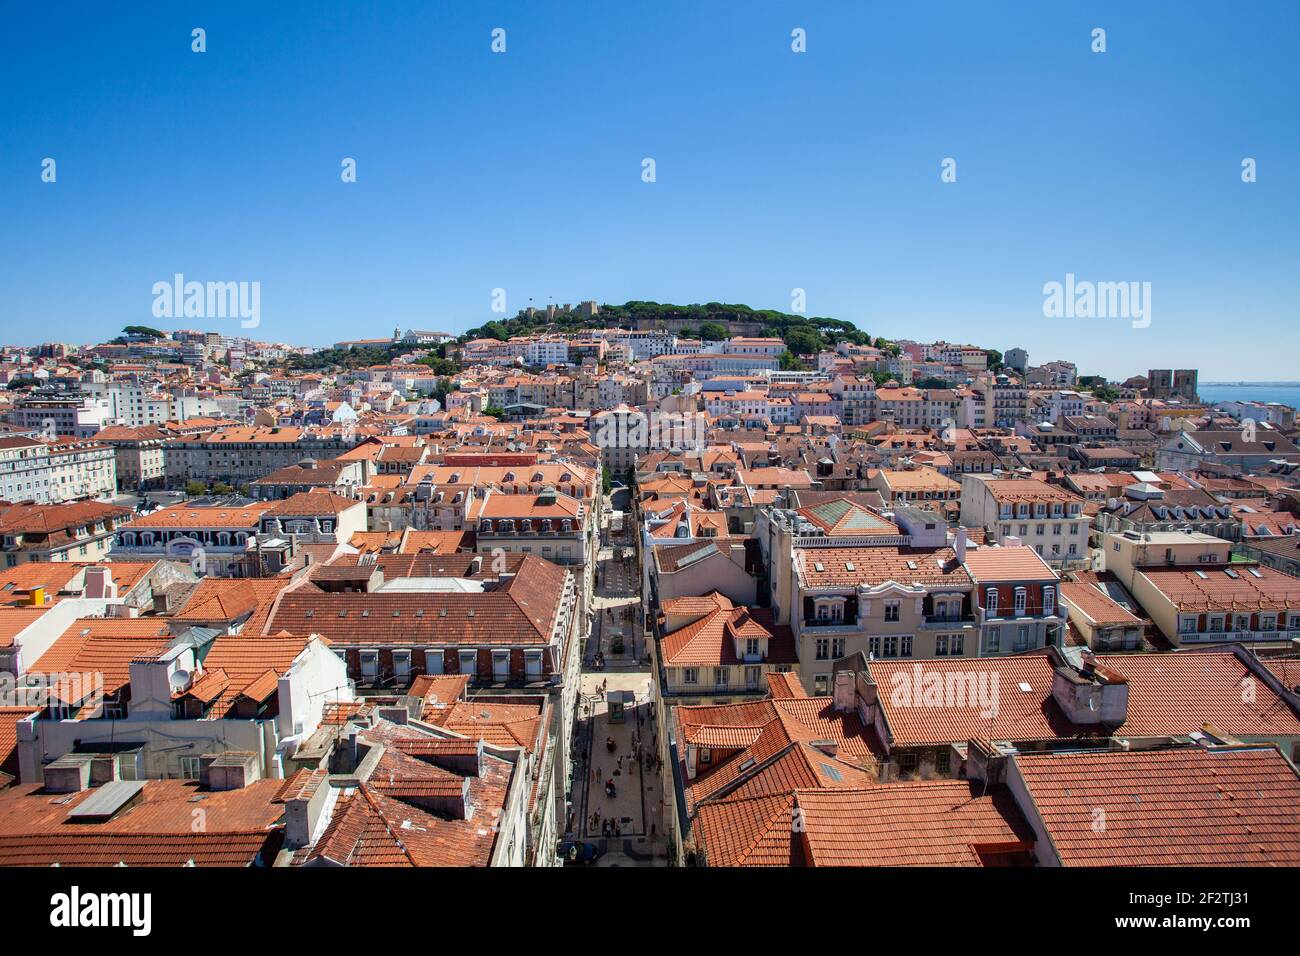 Lo skyline della città di Lisbona con i suoi tetti colorati affacciati sul medievale Castelo de São Jorge sullo sfondo - Portogallo. Foto Stock